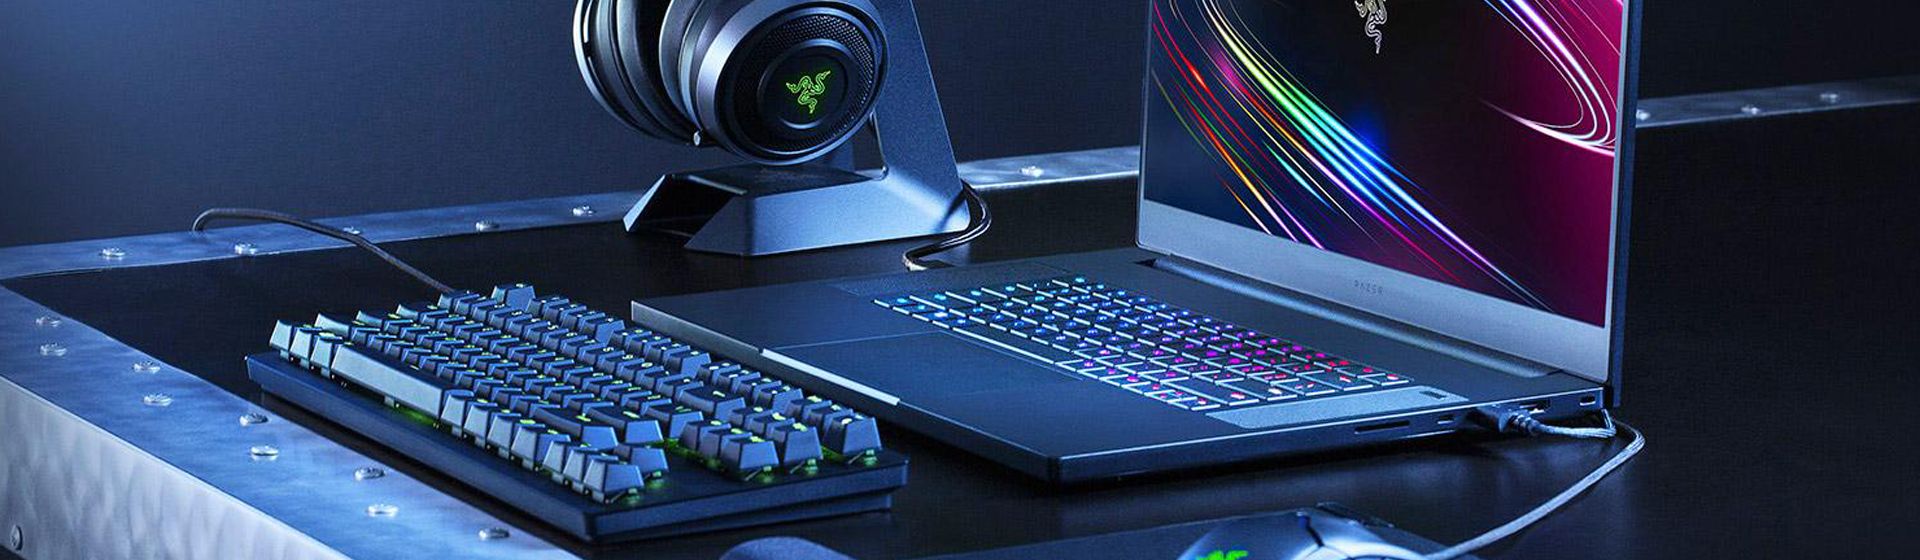 Capa do post: Razer anuncia novo notebook gamer Blade Pro 17 com GeForce RTX 2080